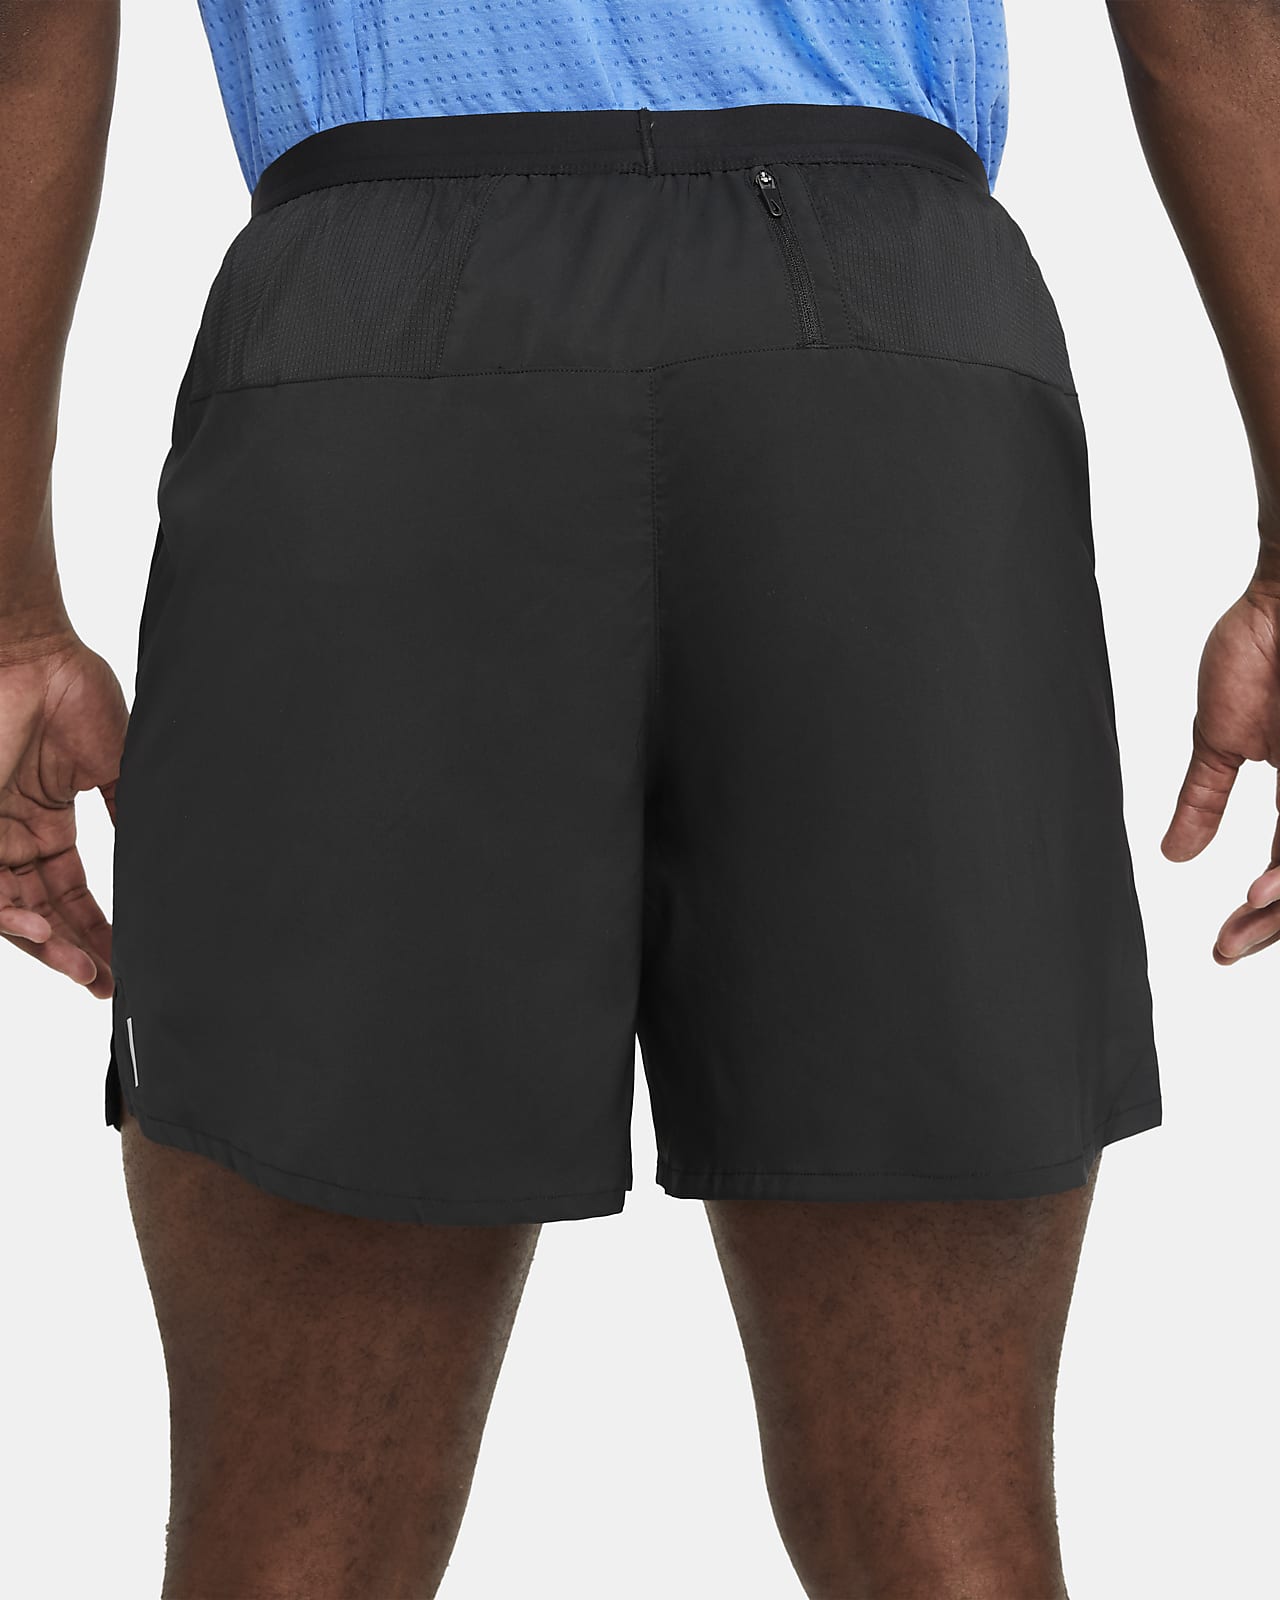 nike shorts with back pocket